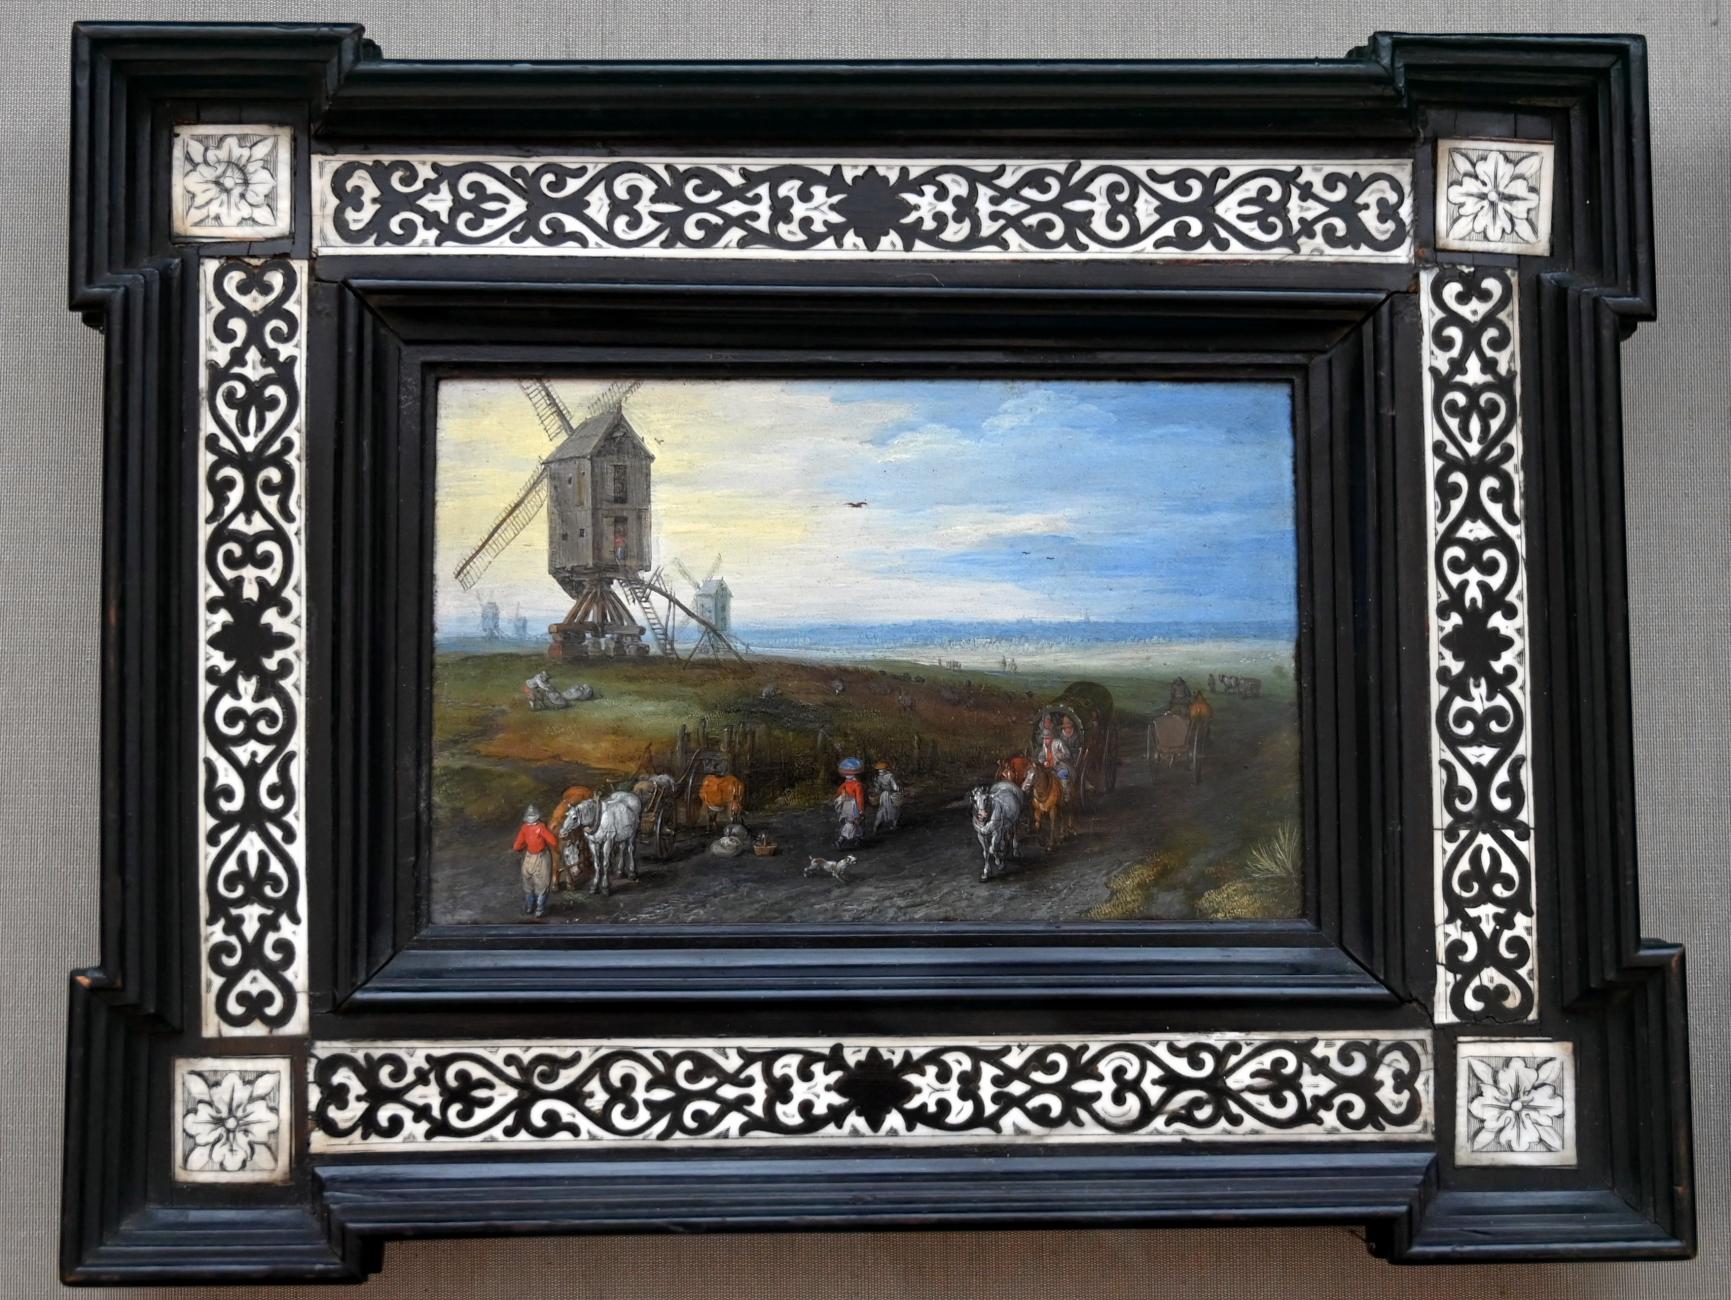 Jan Brueghel der Ältere (Samtbrueghel, Blumenbrueghel) (1593–1621), Windmühlen auf weiter Ebene, München, Alte Pinakothek, Obergeschoss Kabinett 8, 1611, Bild 1/2